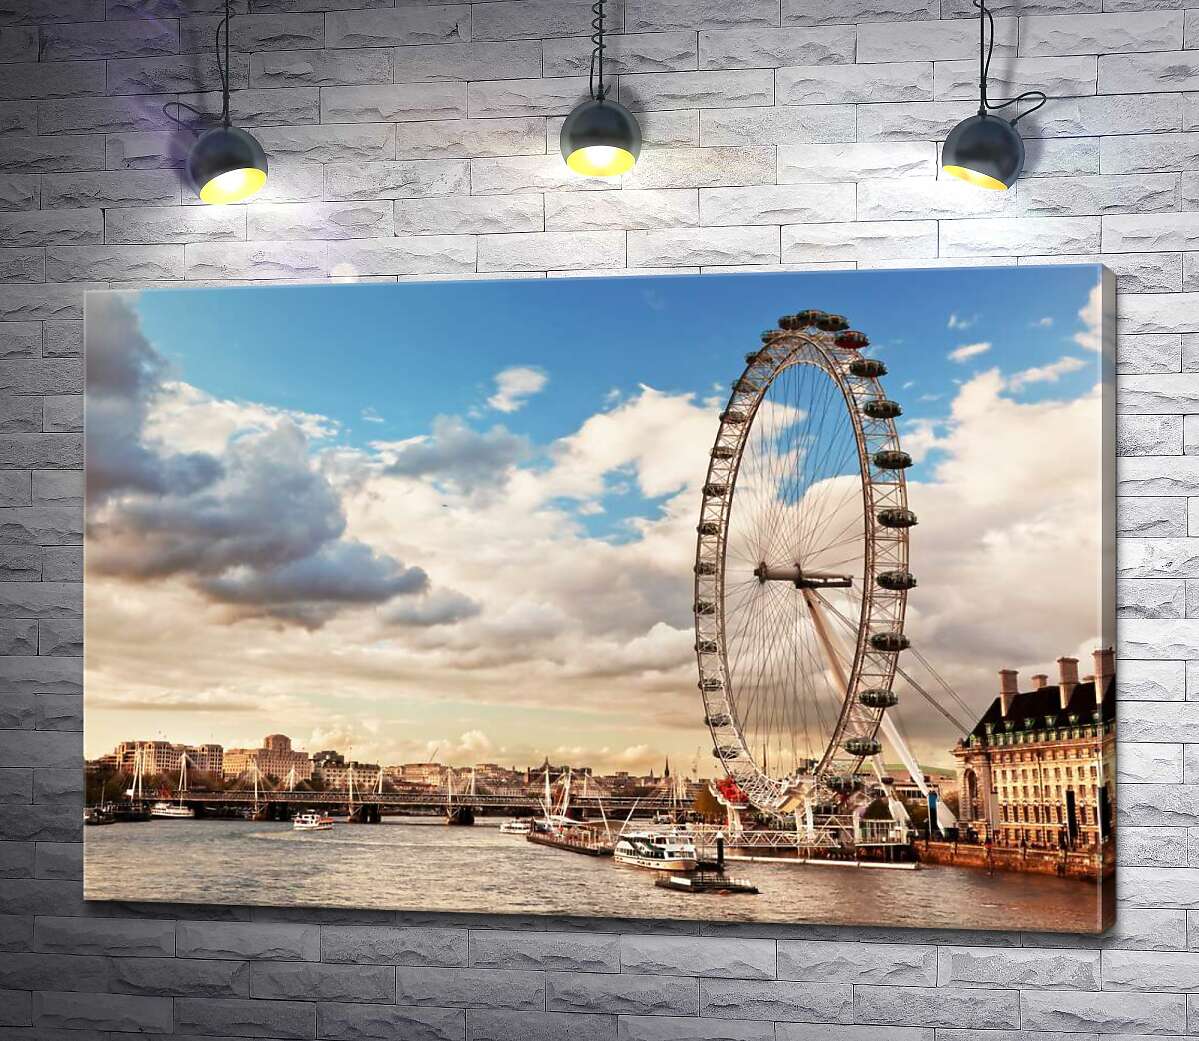 картина Колесо обозрения "Лондонский глаз" (London eye) нависло над водами Темзы